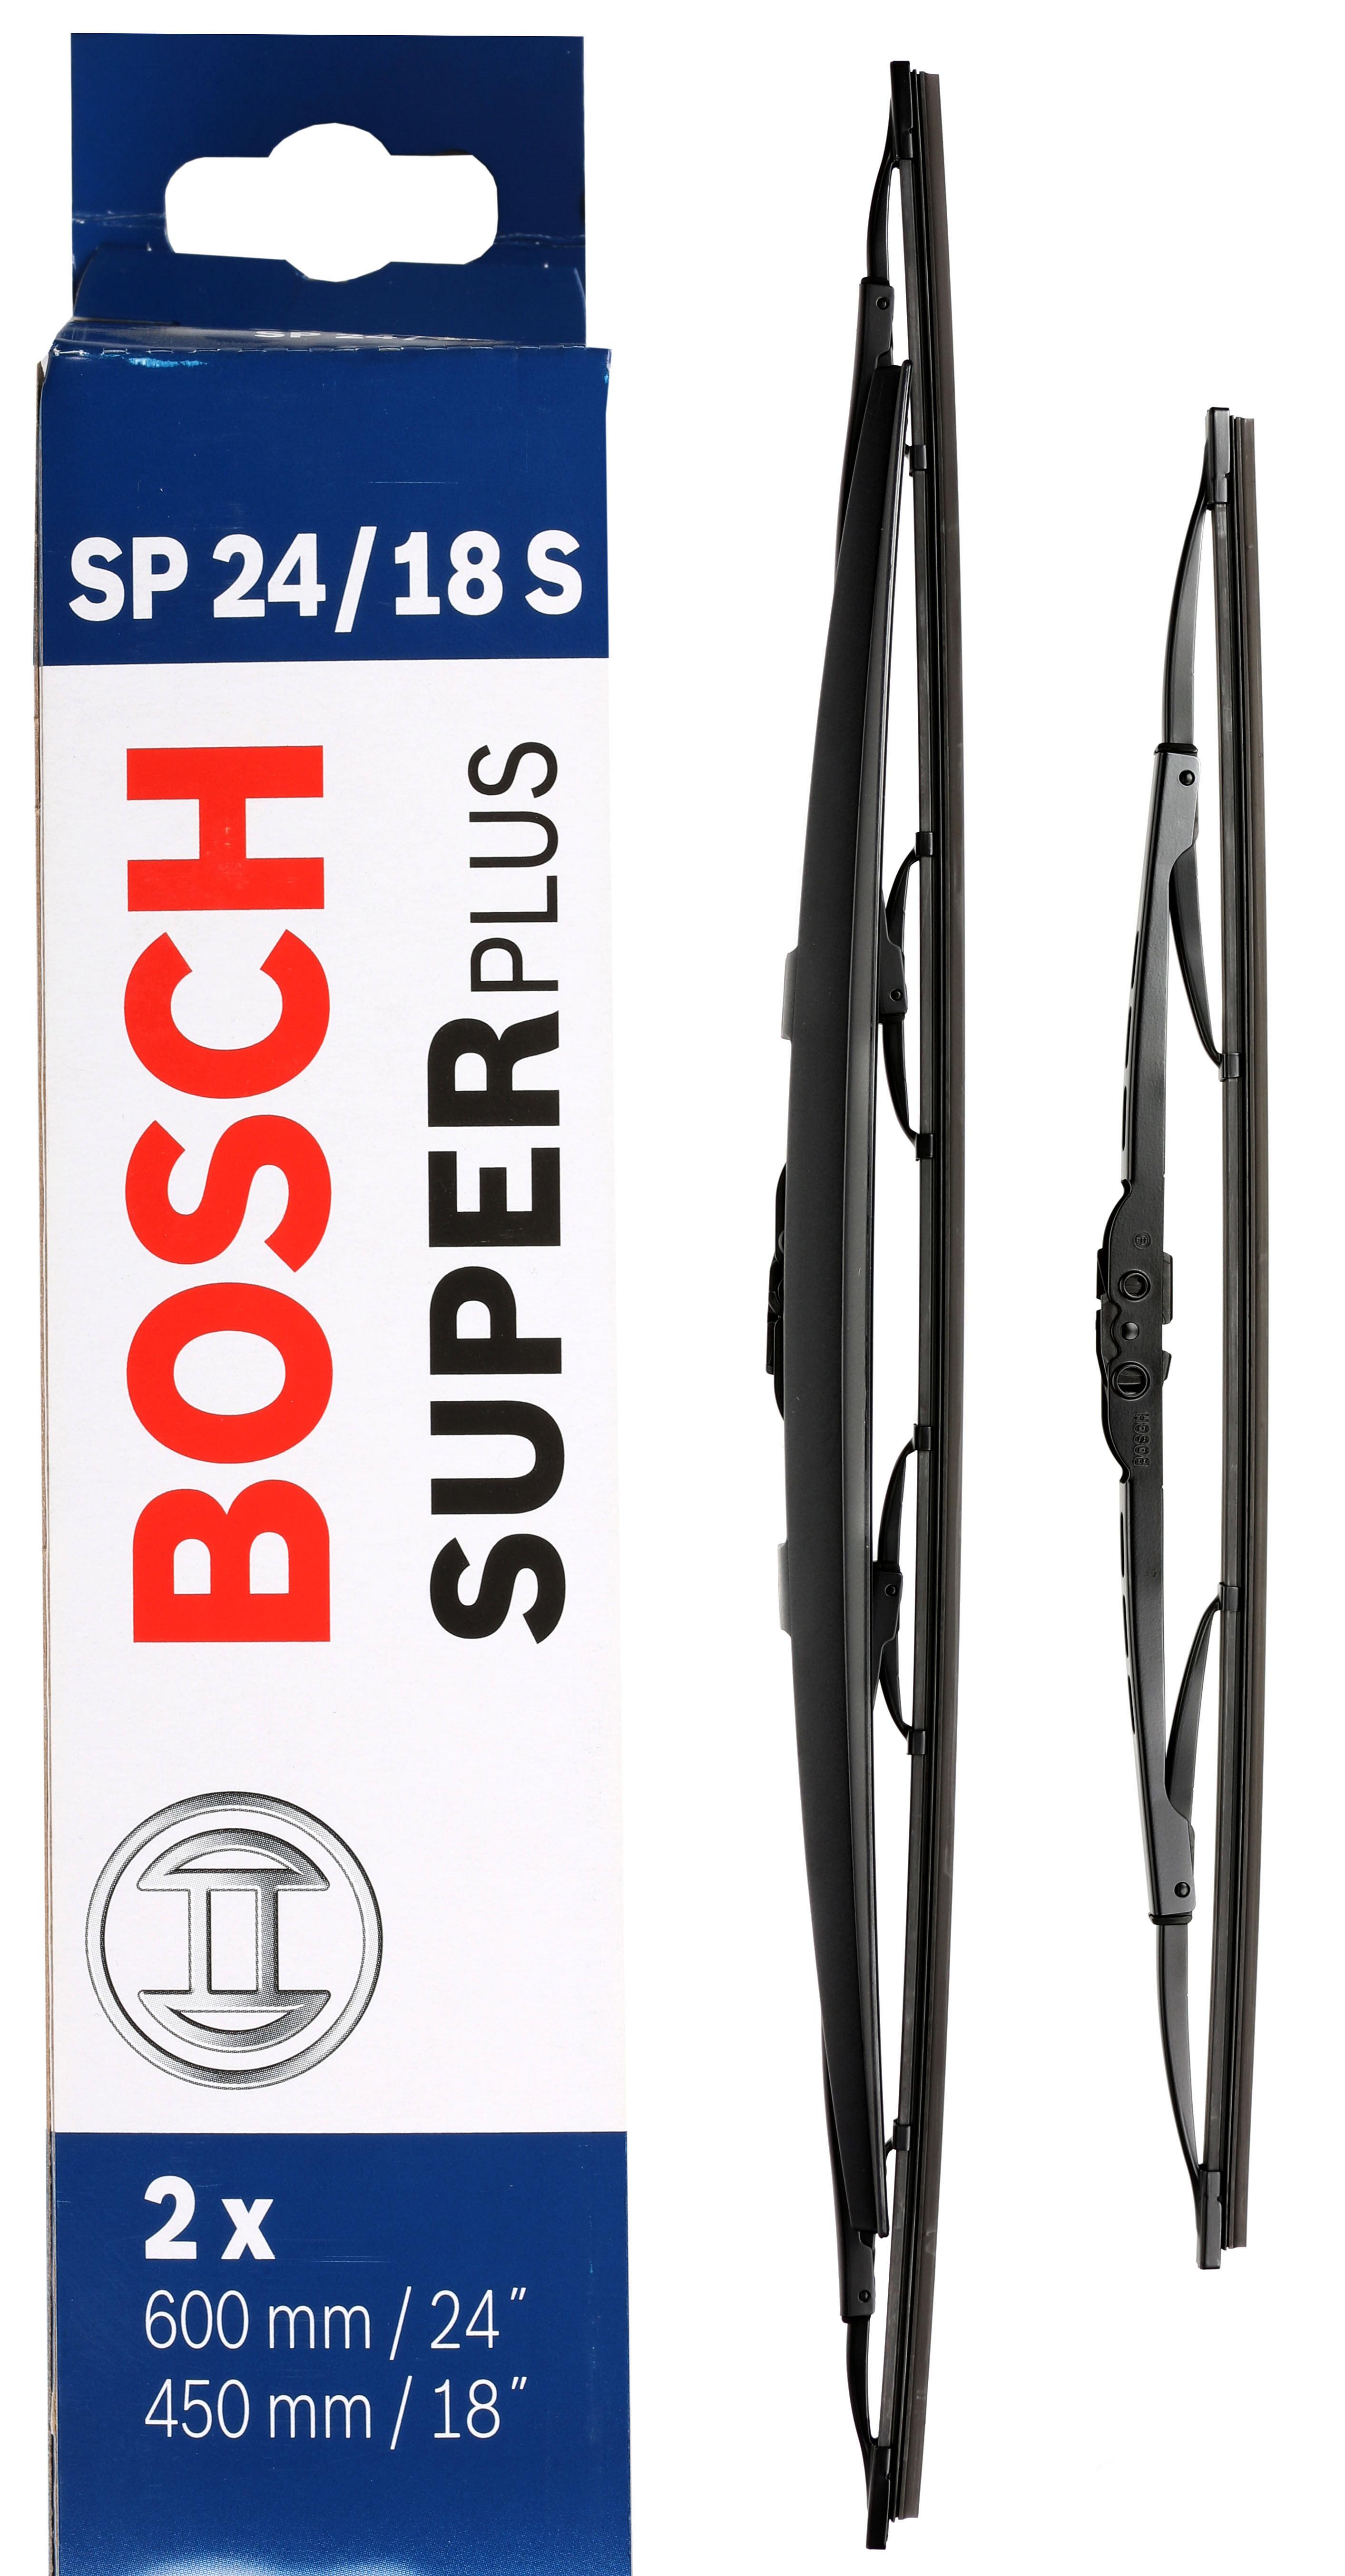 Bosch Sp24/18S Wiper Blades - Front Pair